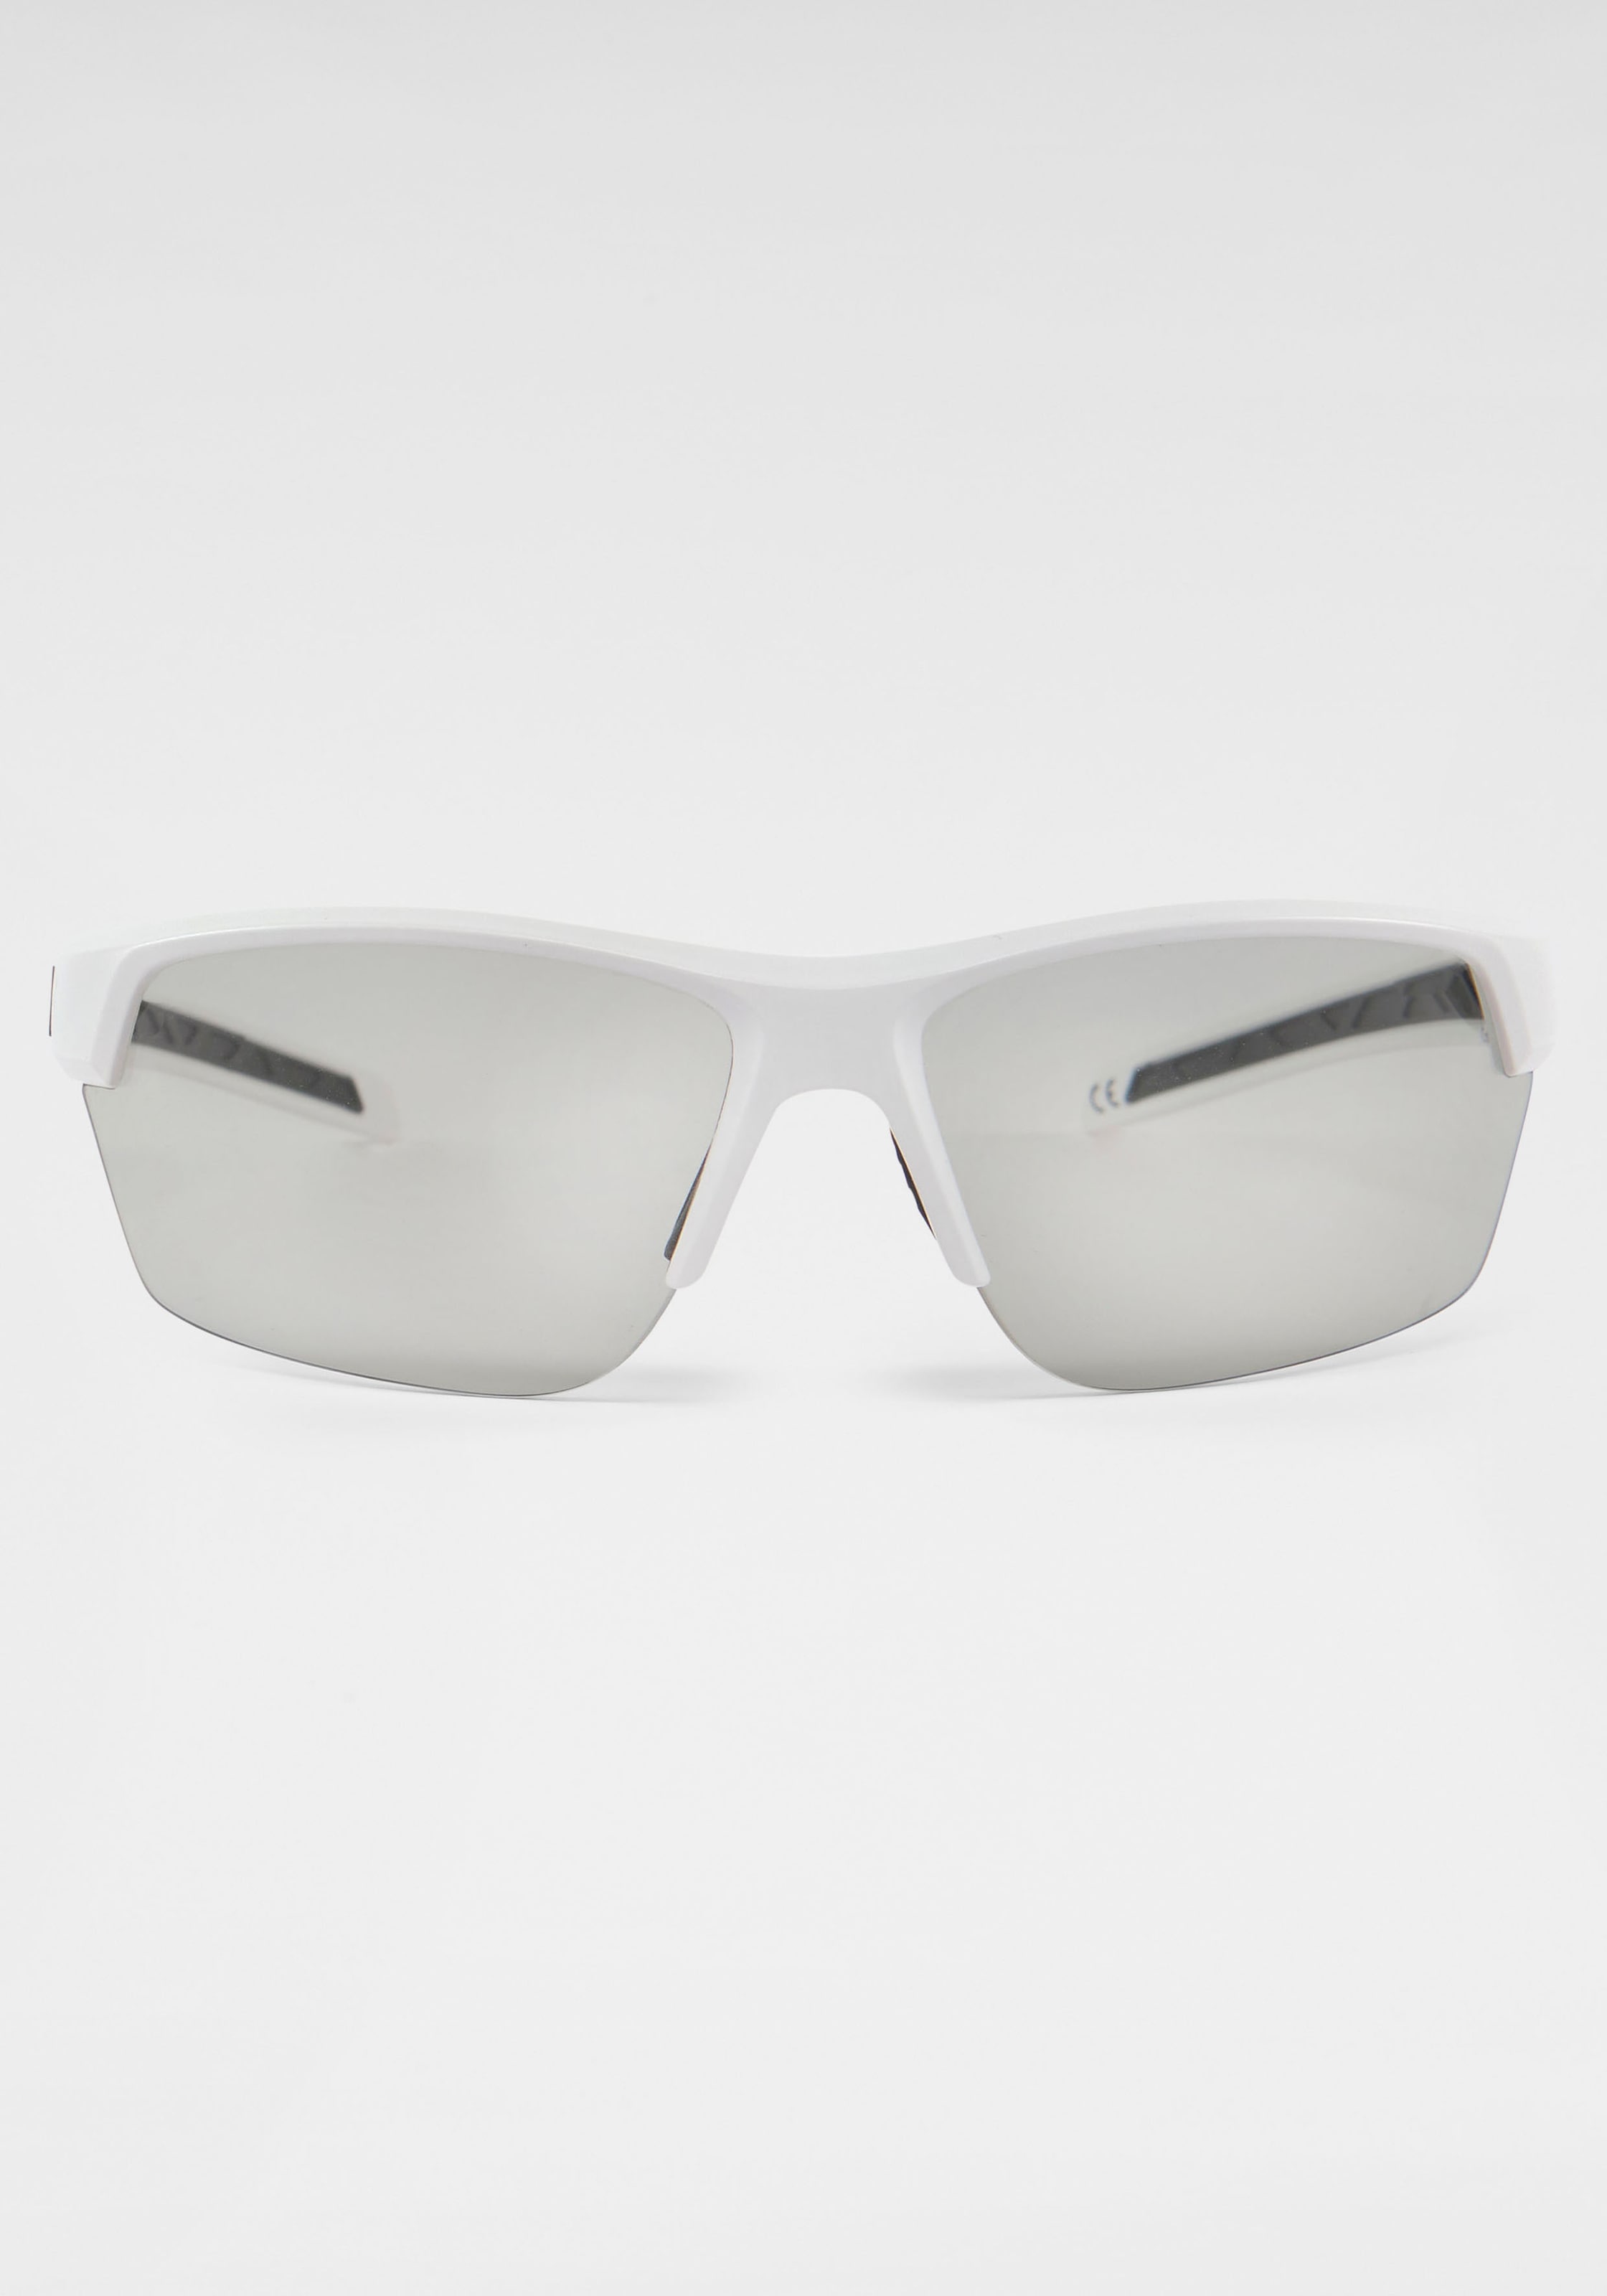 BACK IN BLACK Eyewear Sonnenbrille, Verspiegelte Gläser für BAUR | kaufen